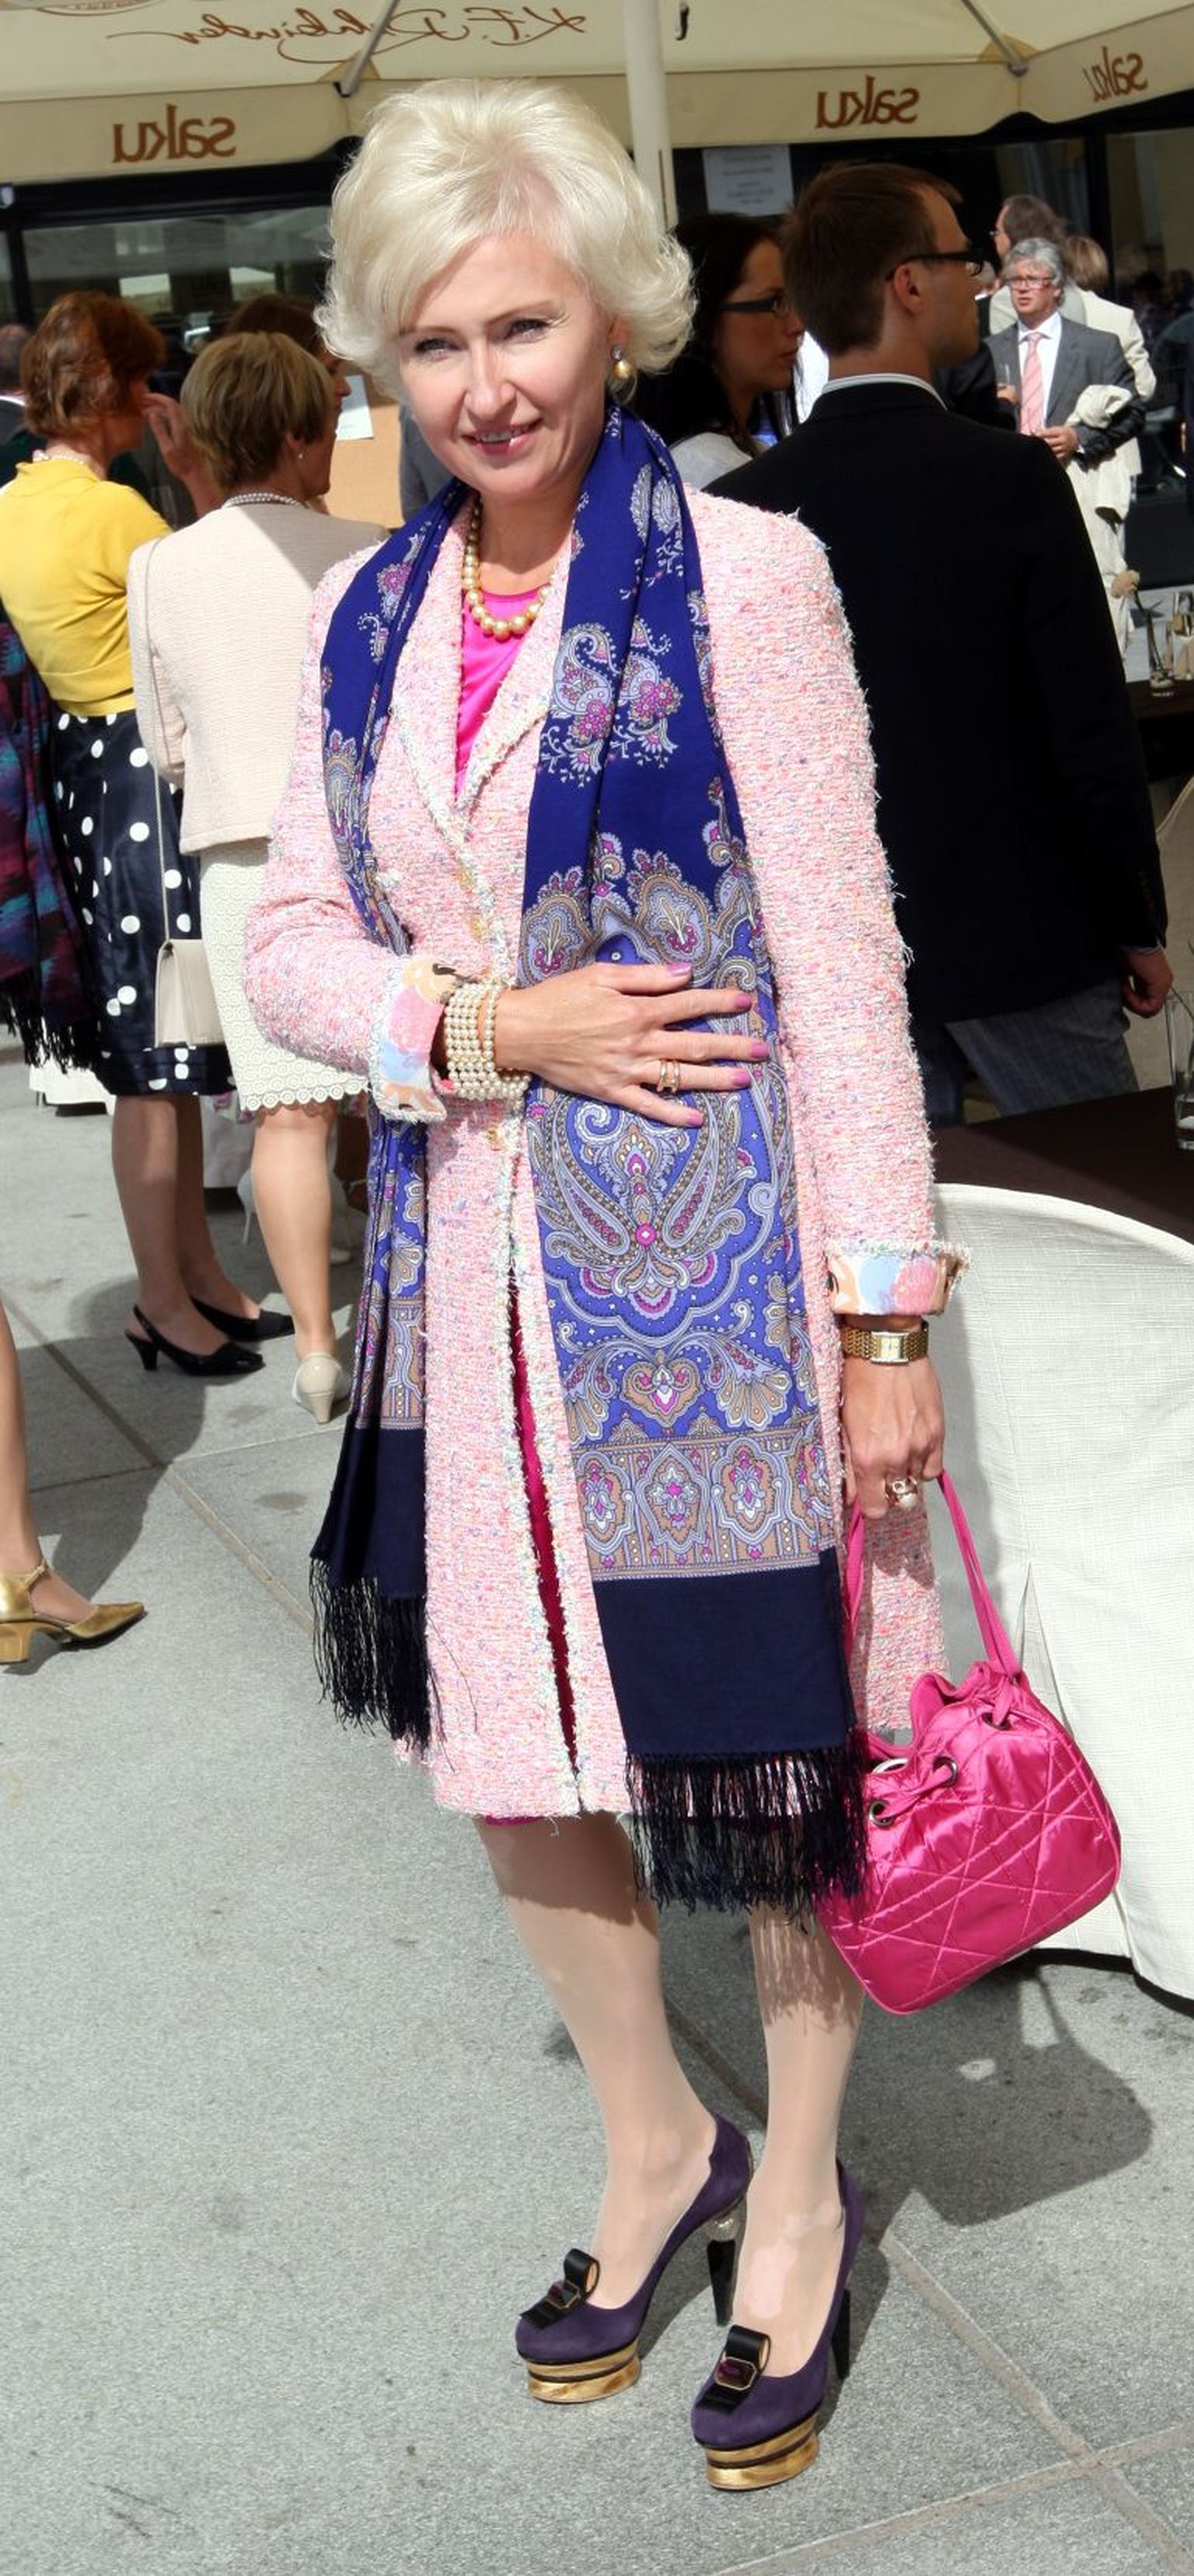 Kristiina Ojuland
Daam kandis Chaneli kostüümi ning Prada kingi ja kotikest